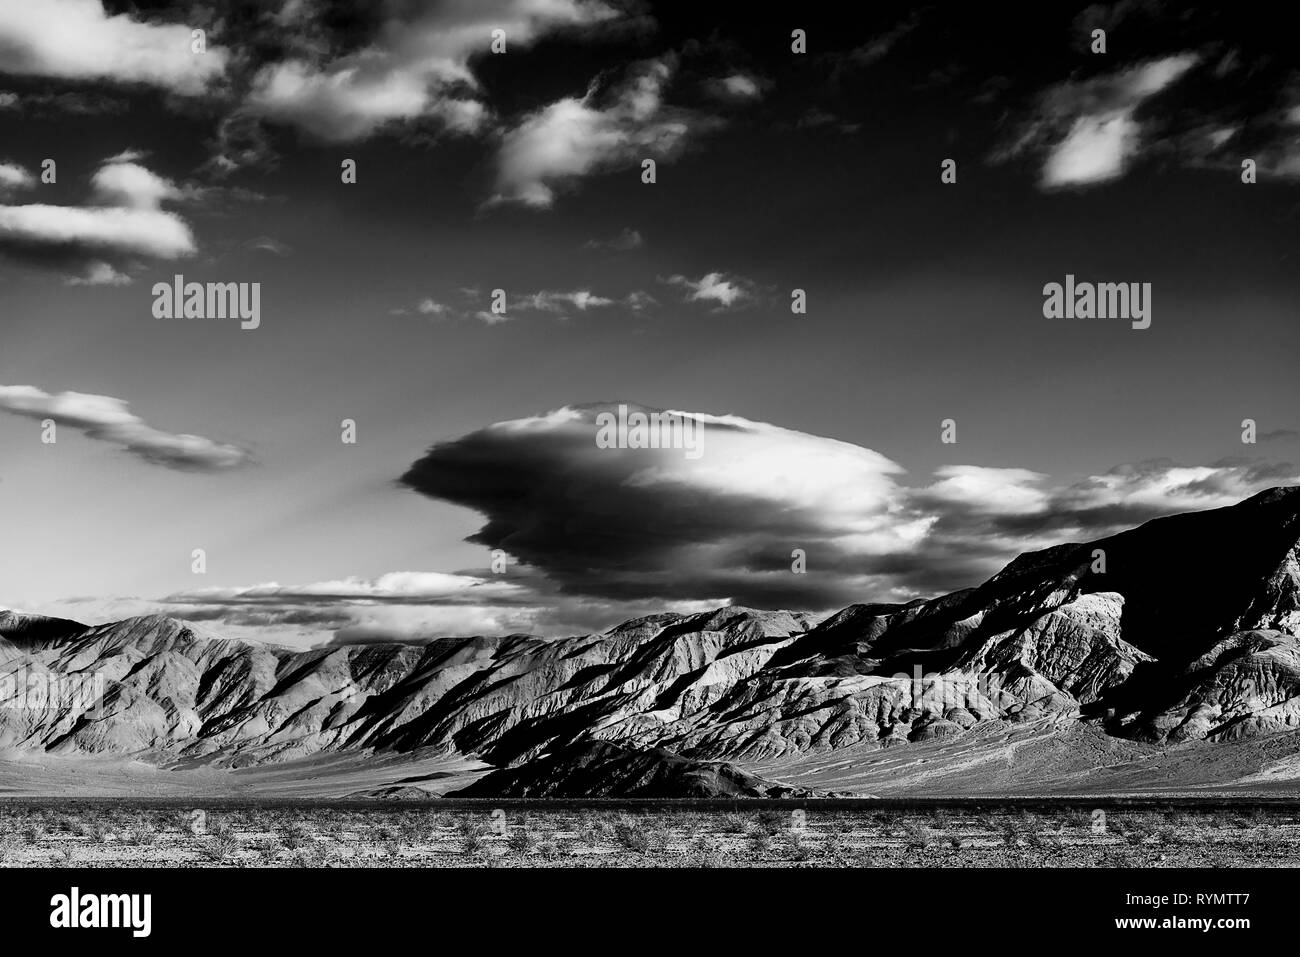 Noir et blanc, de la vallée du désert aride aux montagnes Rocheuses ; ciel avec des nuages blancs au-dessus. Banque D'Images